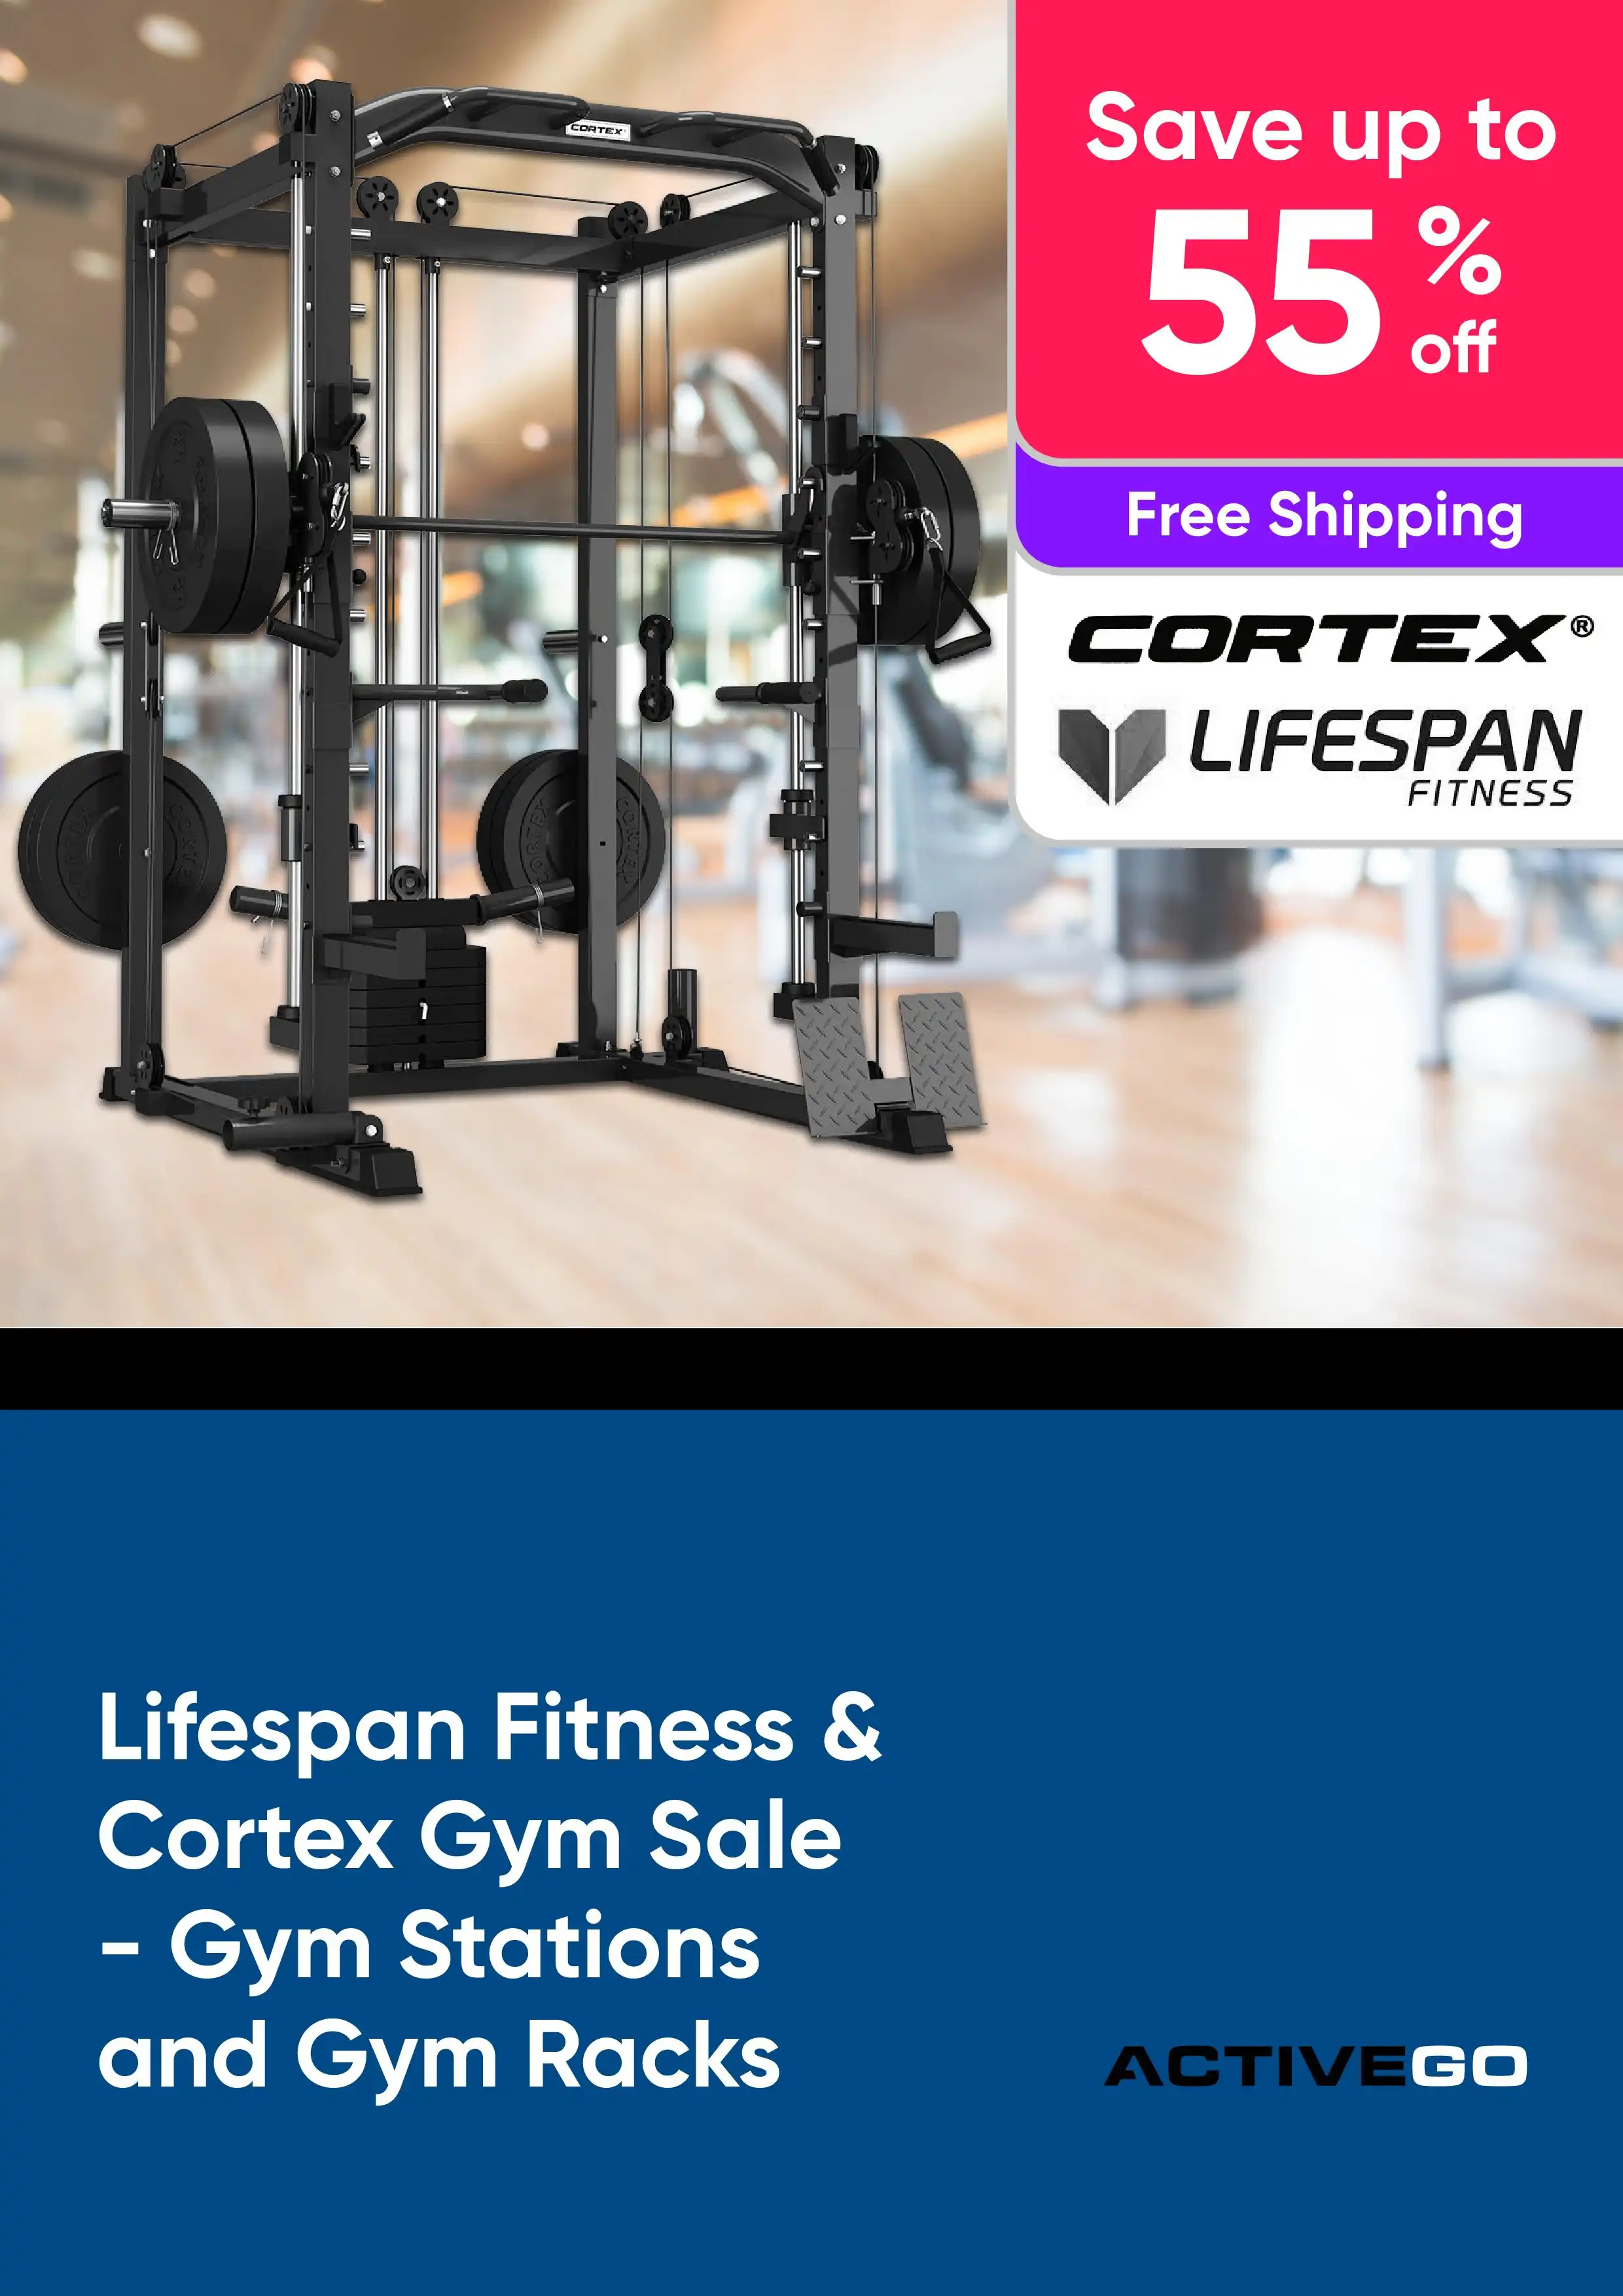 Lifespan Fitness & Cortex Gym Sale - Gym Stations and Gym Racks - Save up to 55% off